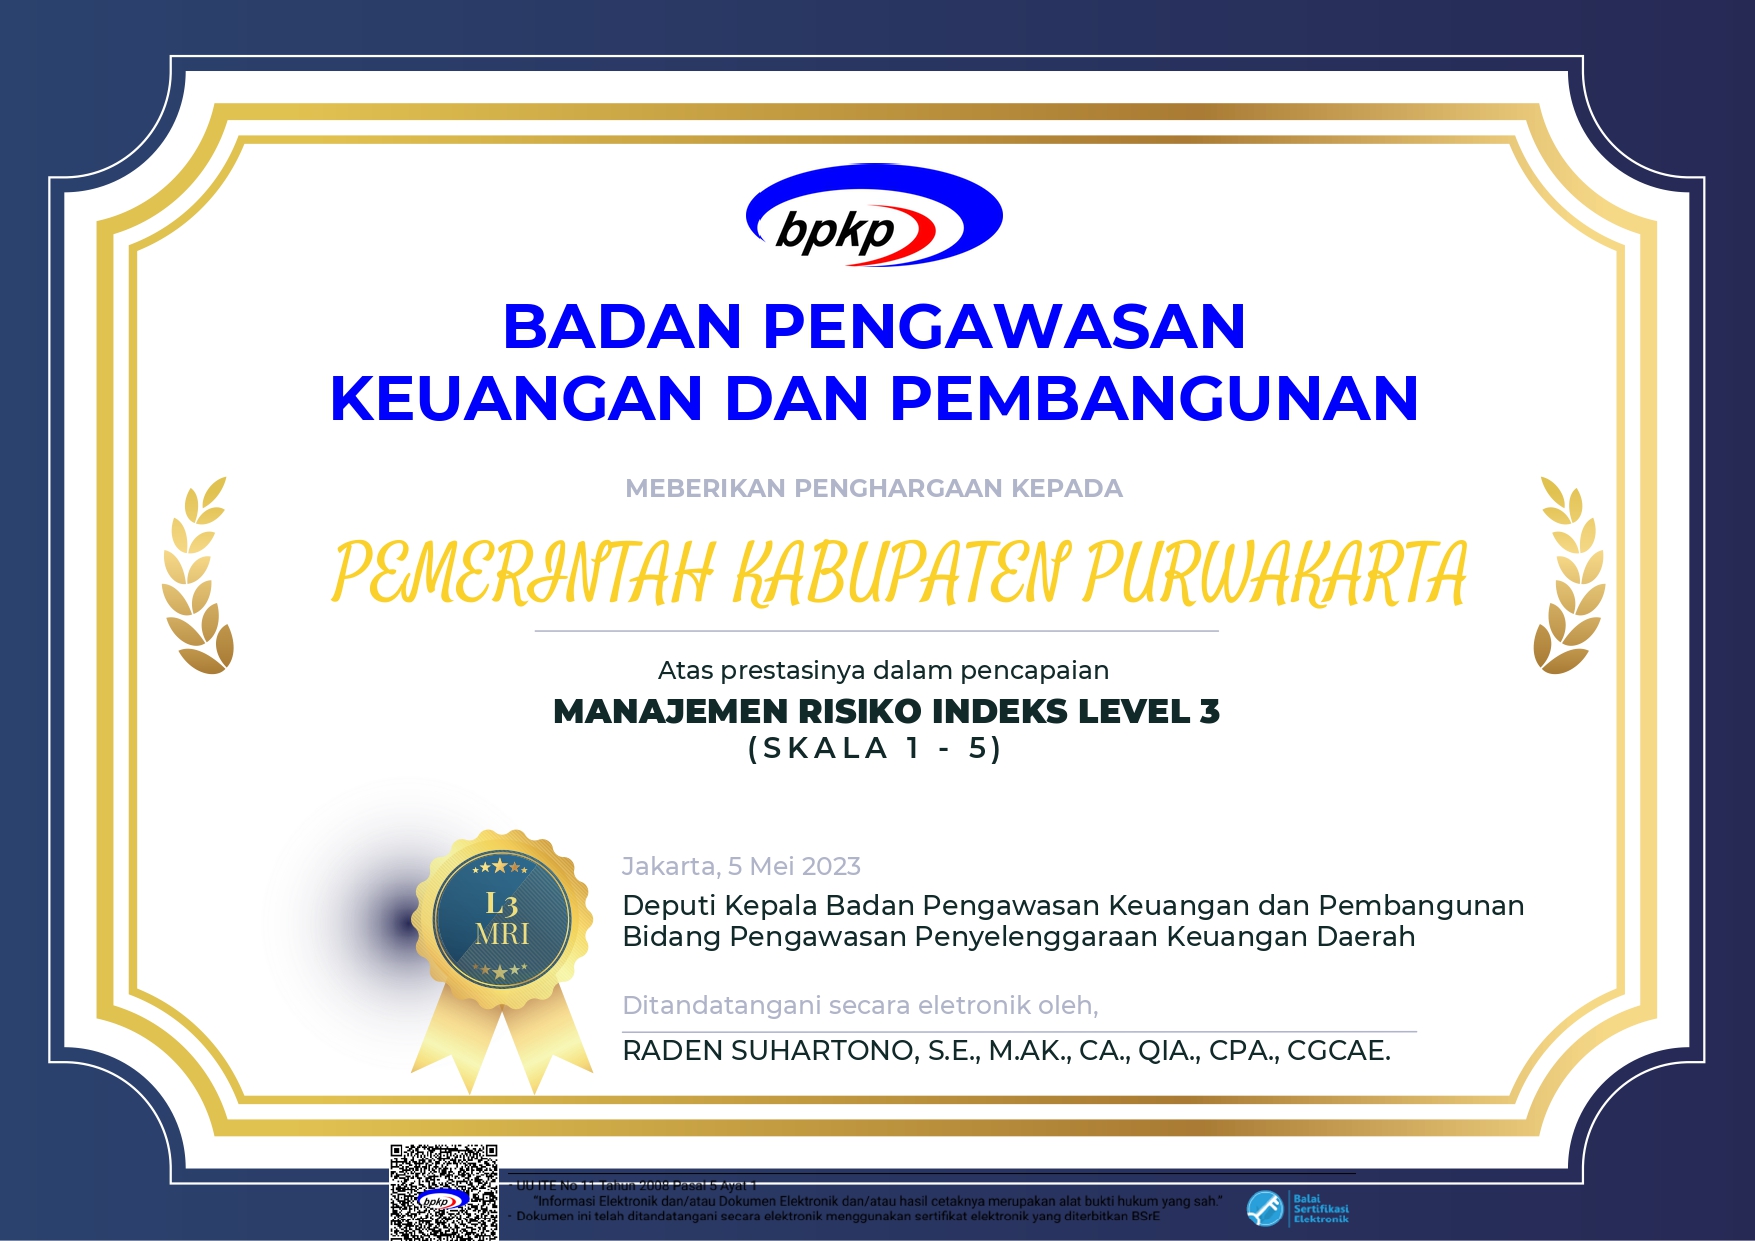 Kabupaten Purwakarta meraih predikat Predikat Indeks Manajemen Risiko (MRI) Level 3 dari BPKP